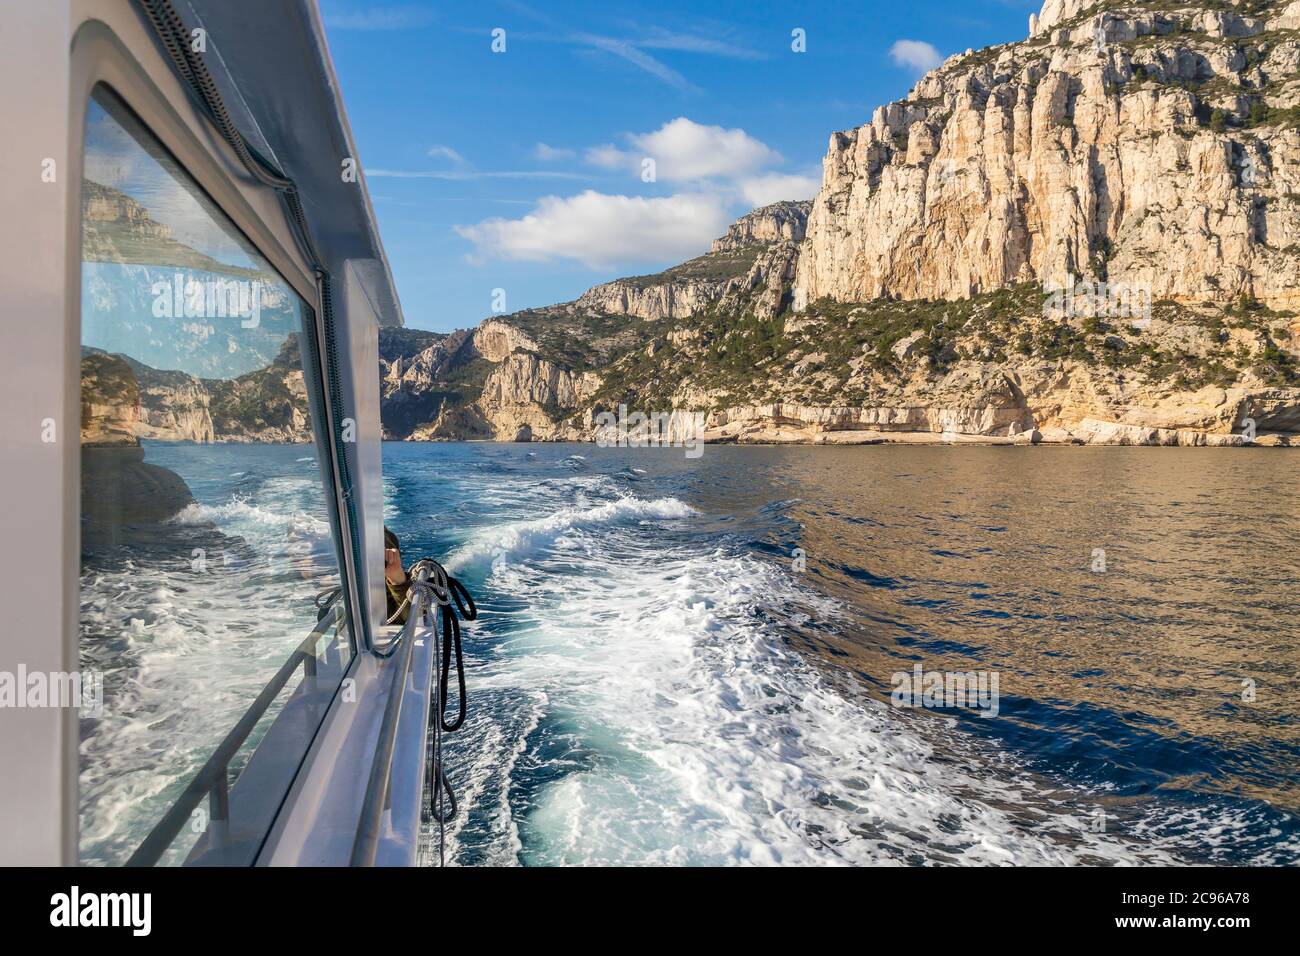 Parc national des calanques vu d'un bateau d'excursion, Marseille, France, Europe Banque D'Images